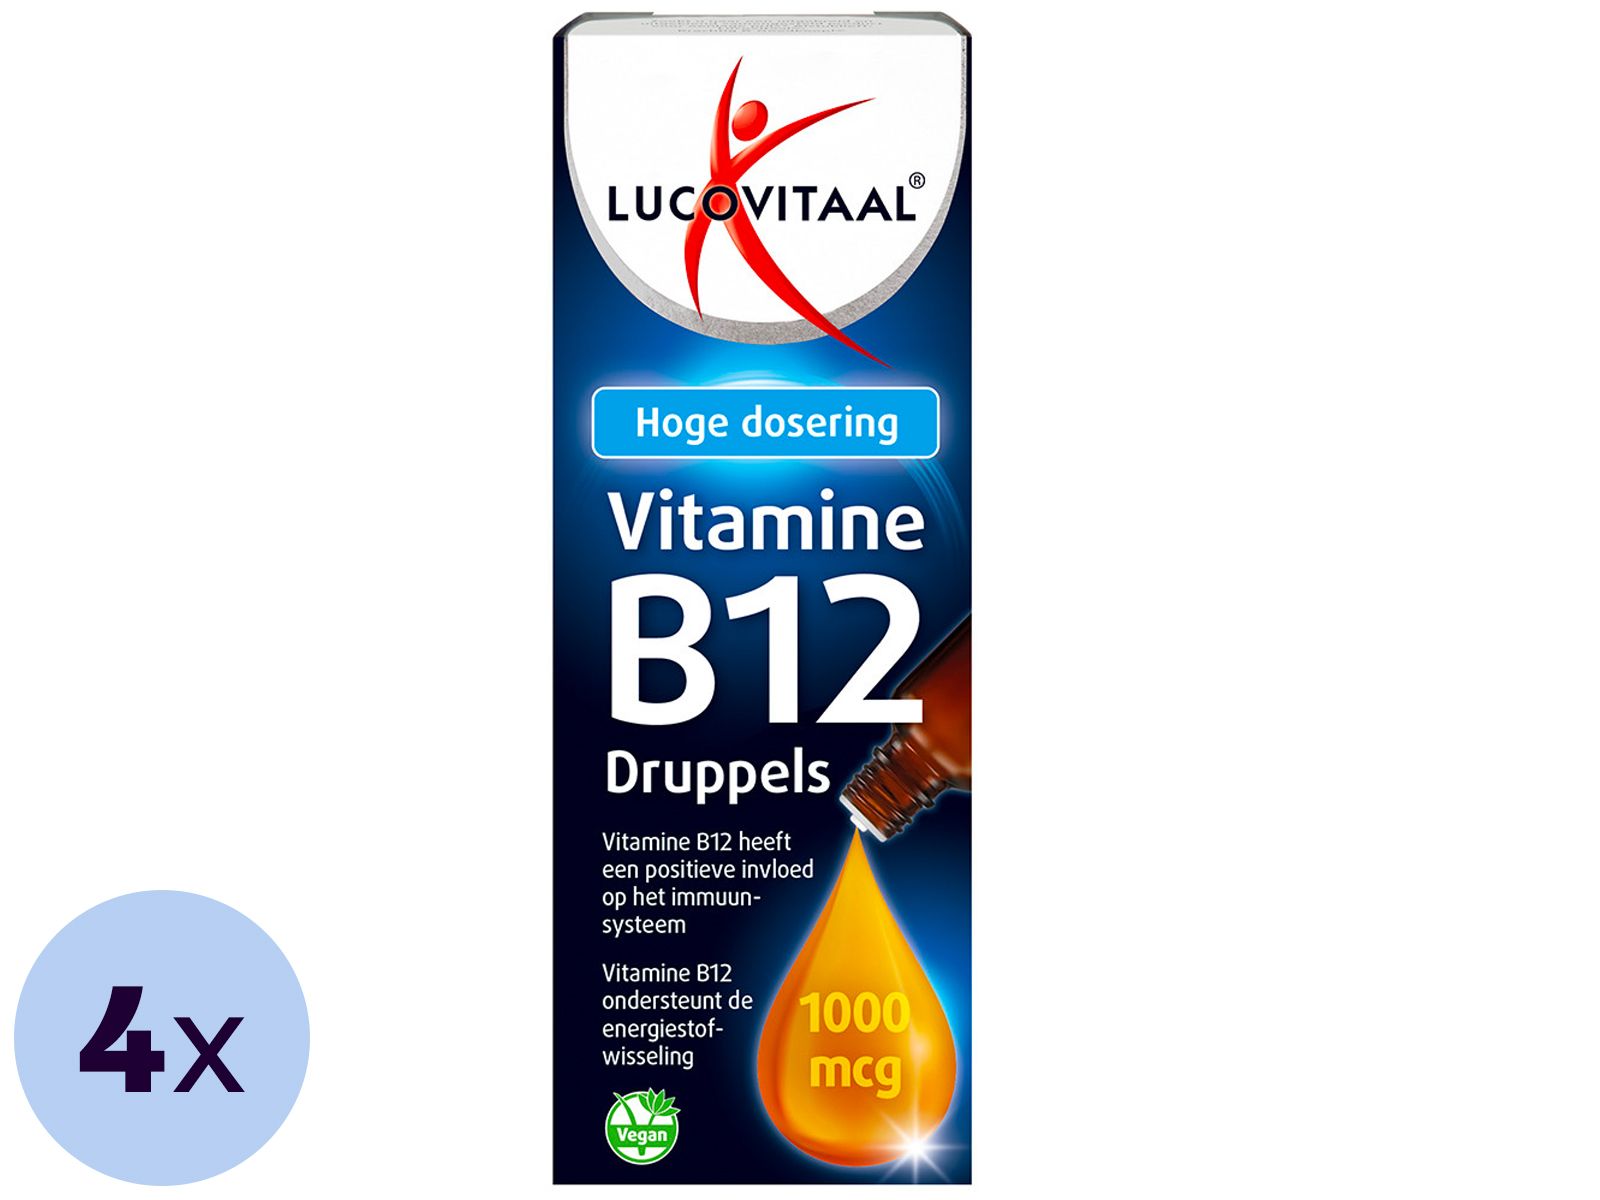 4x-krople-lucovitaal-vitamine-b12-50-ml